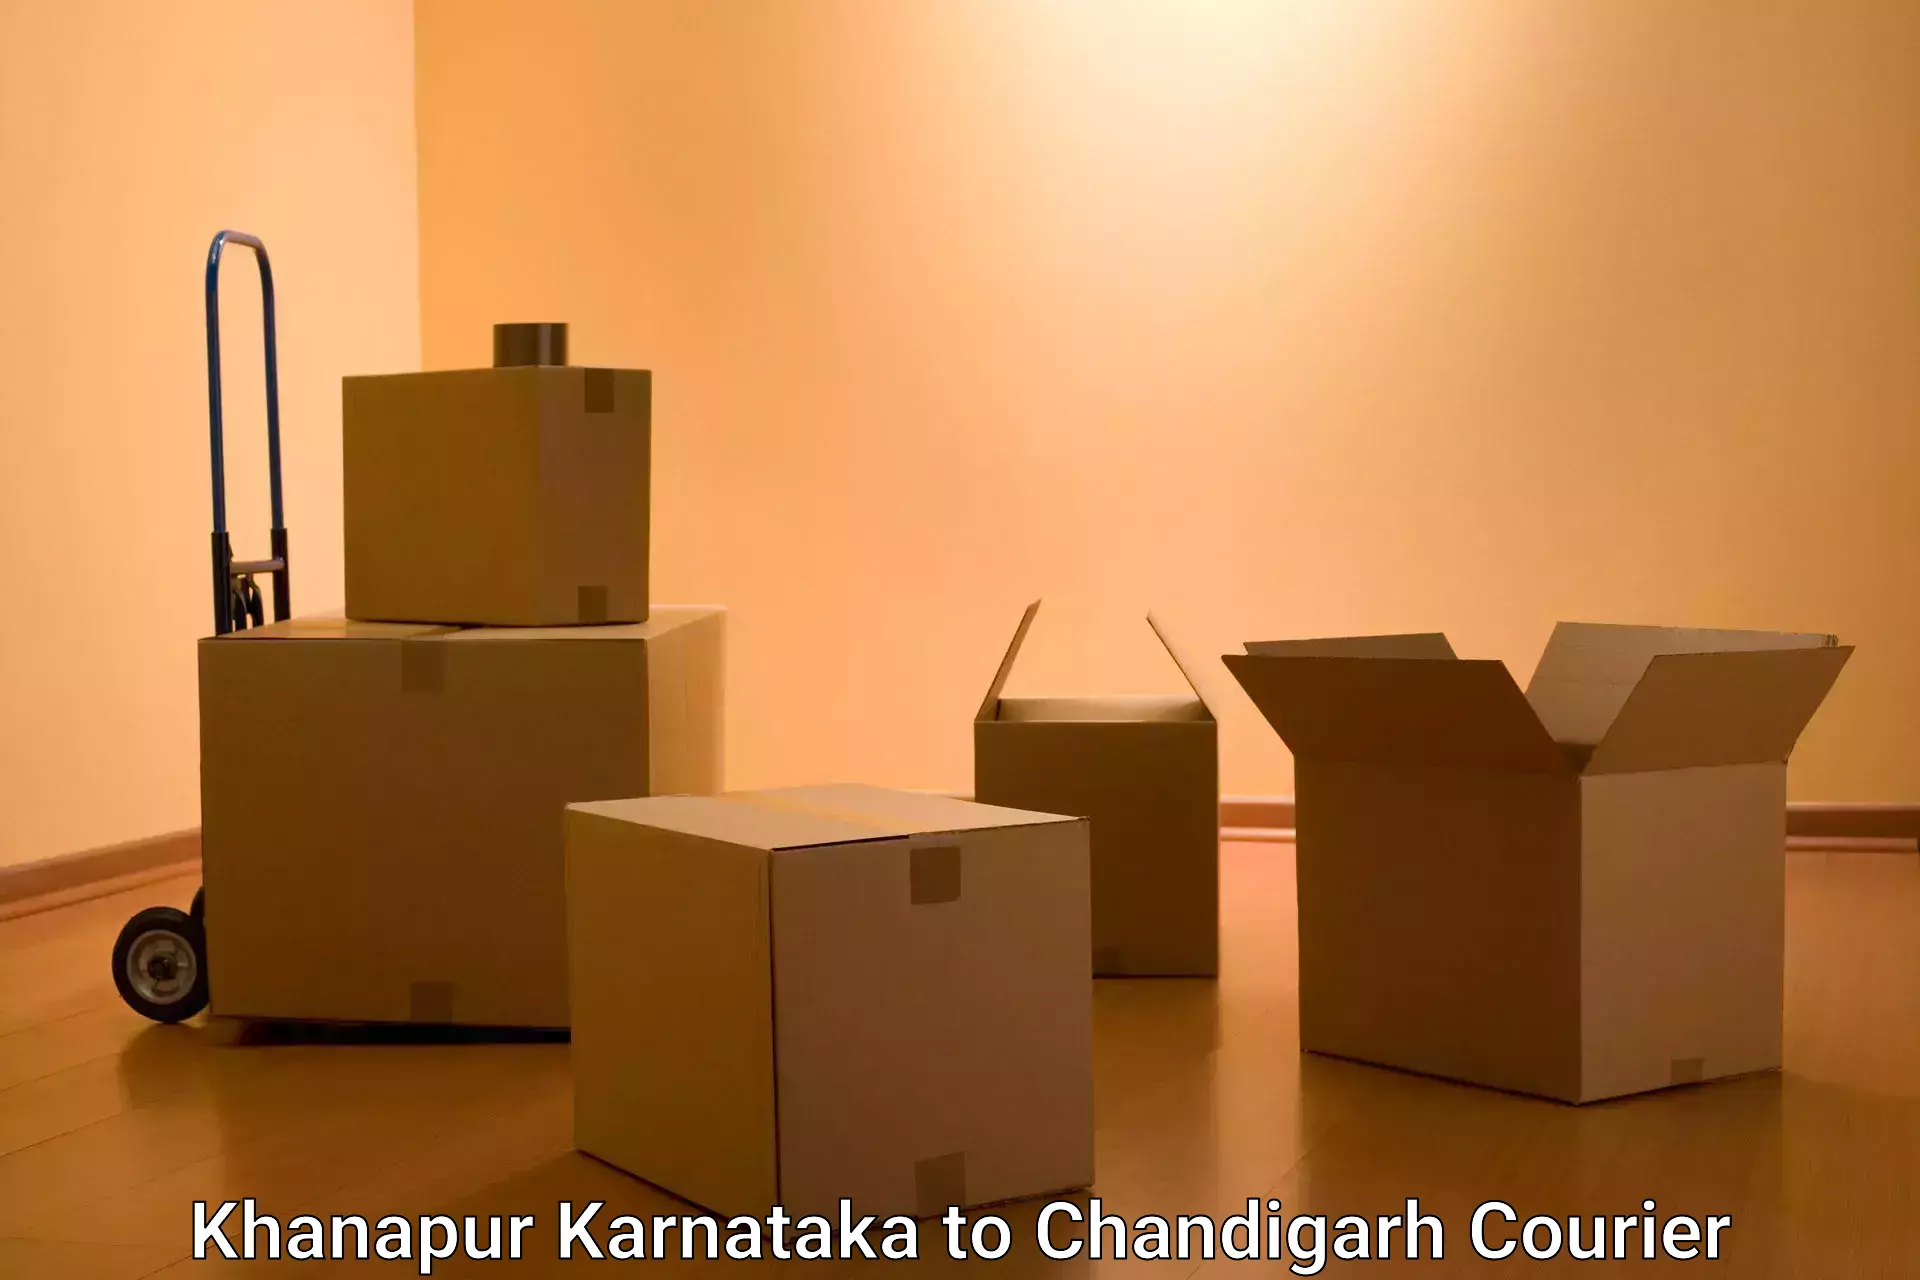 Cross-border shipping Khanapur Karnataka to Chandigarh